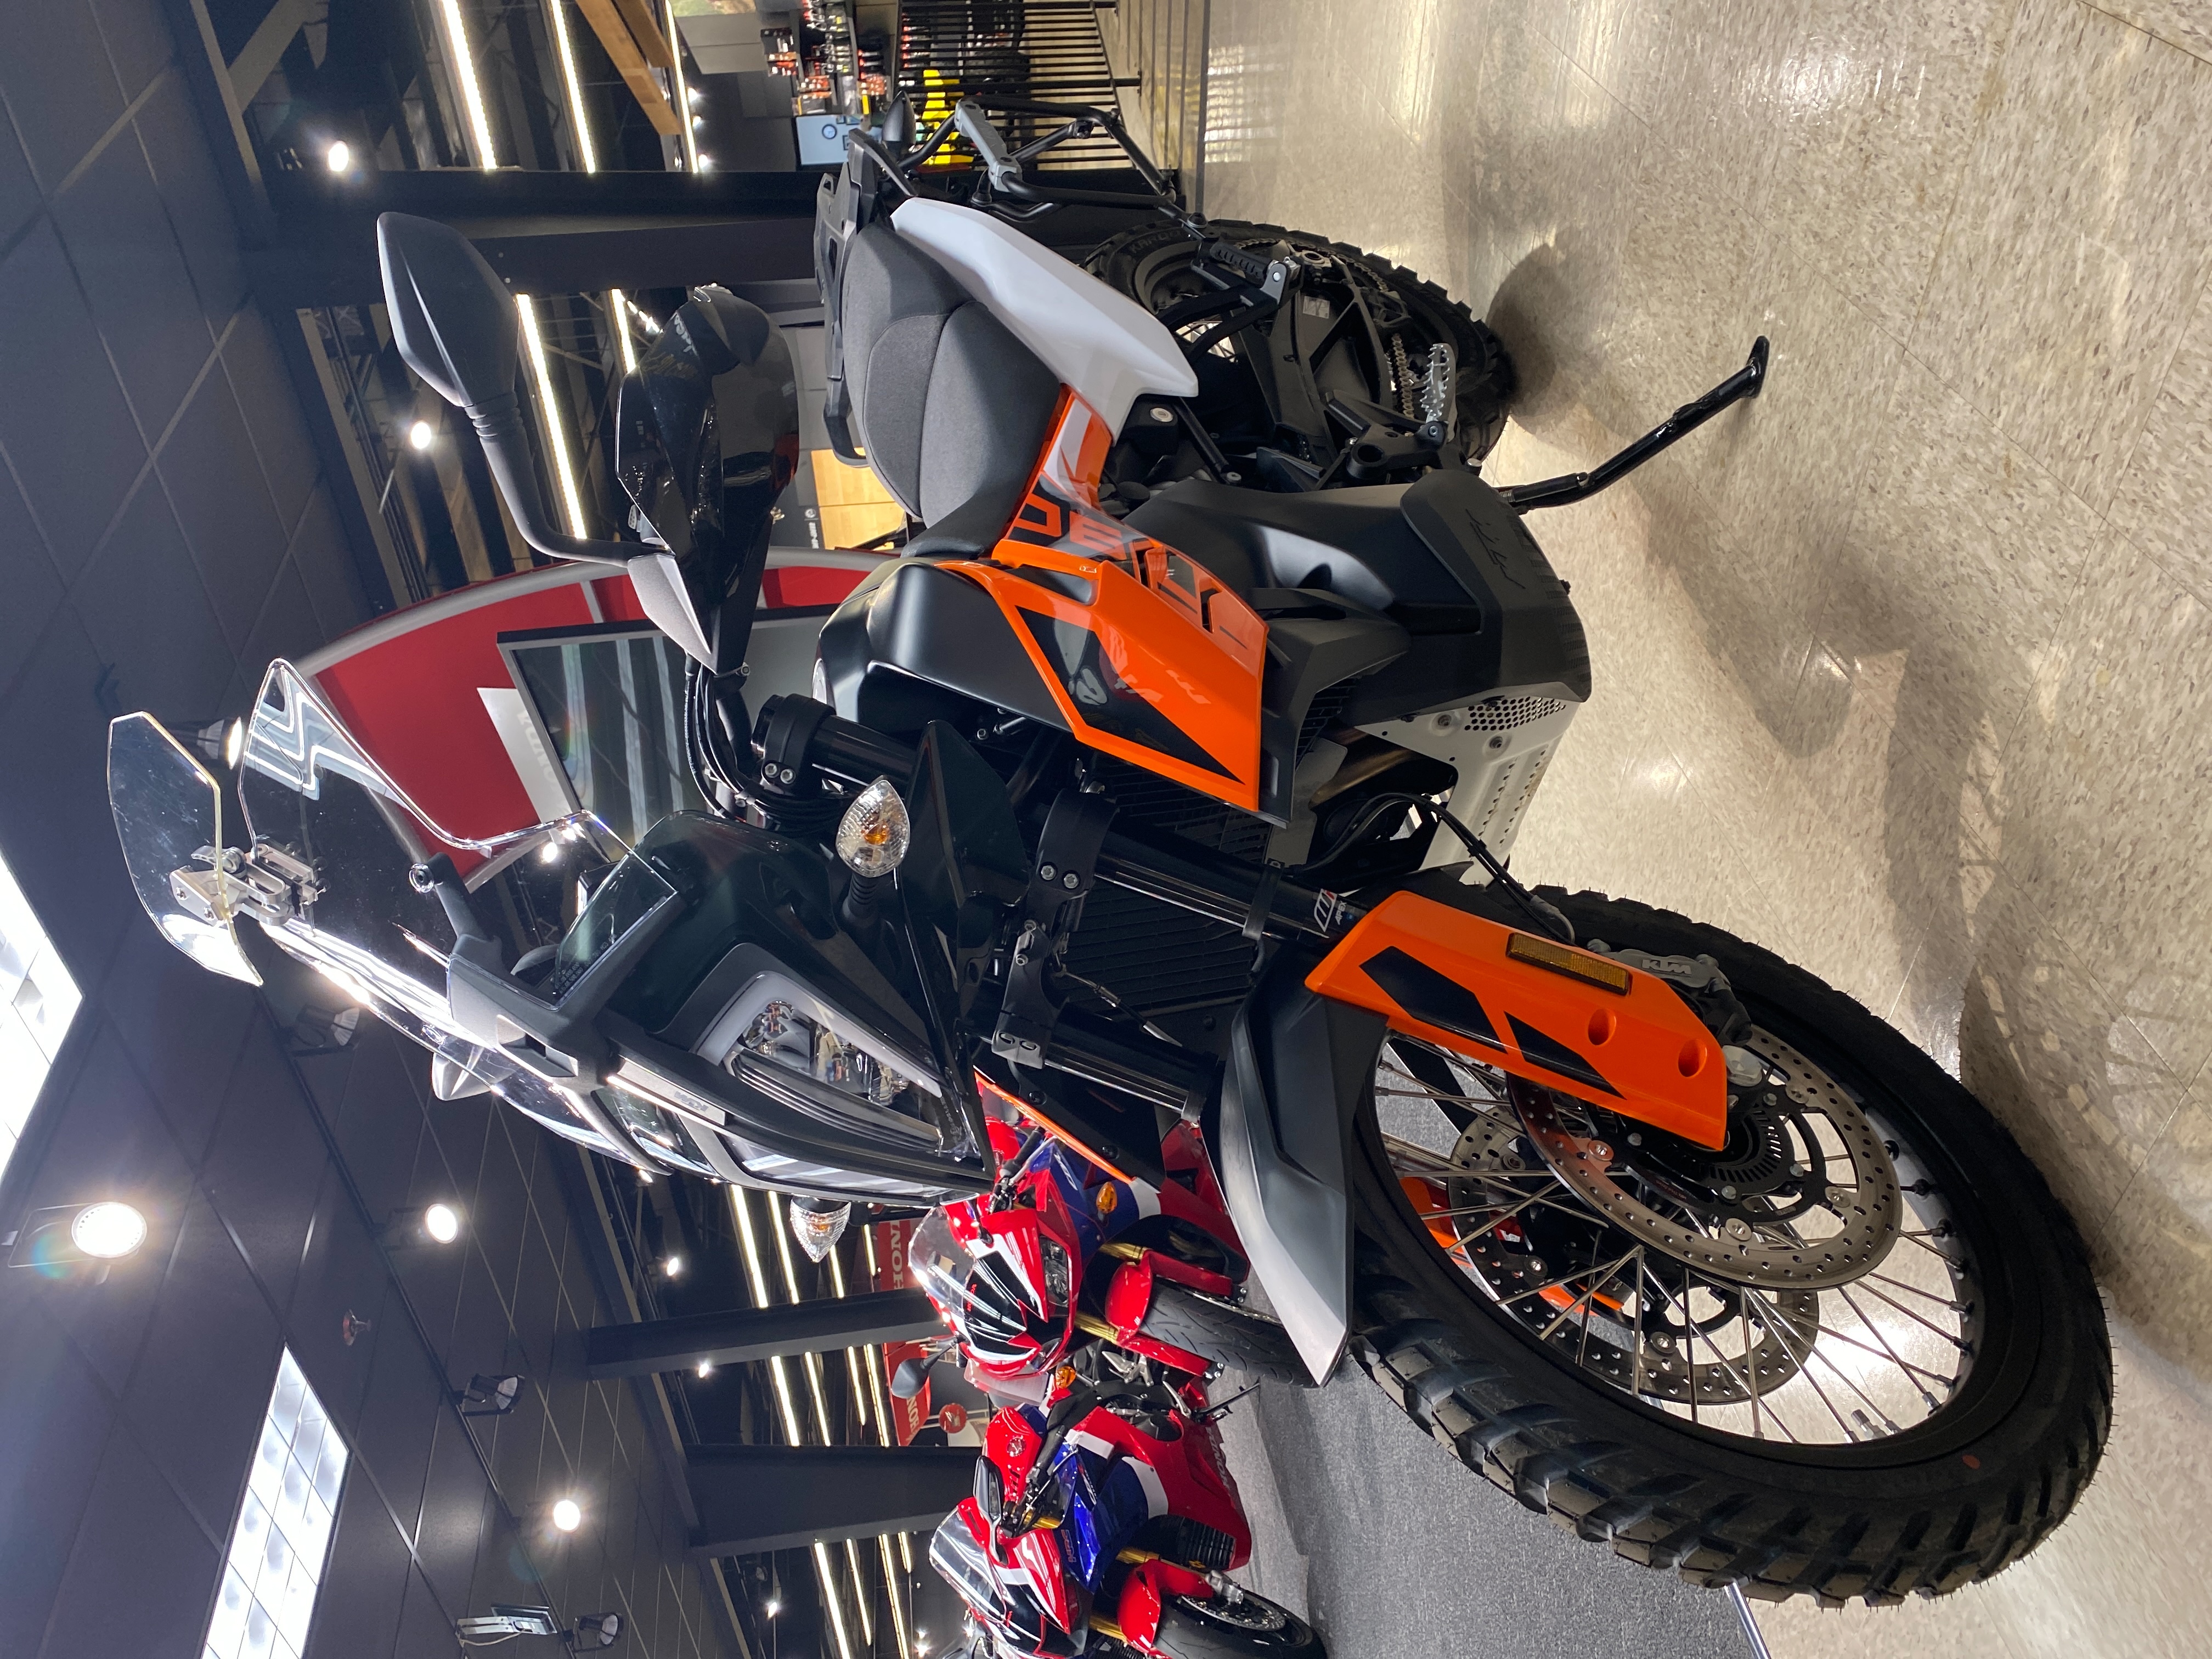 2020 KTM Adventure 790 at Sloans Motorcycle ATV, Murfreesboro, TN, 37129